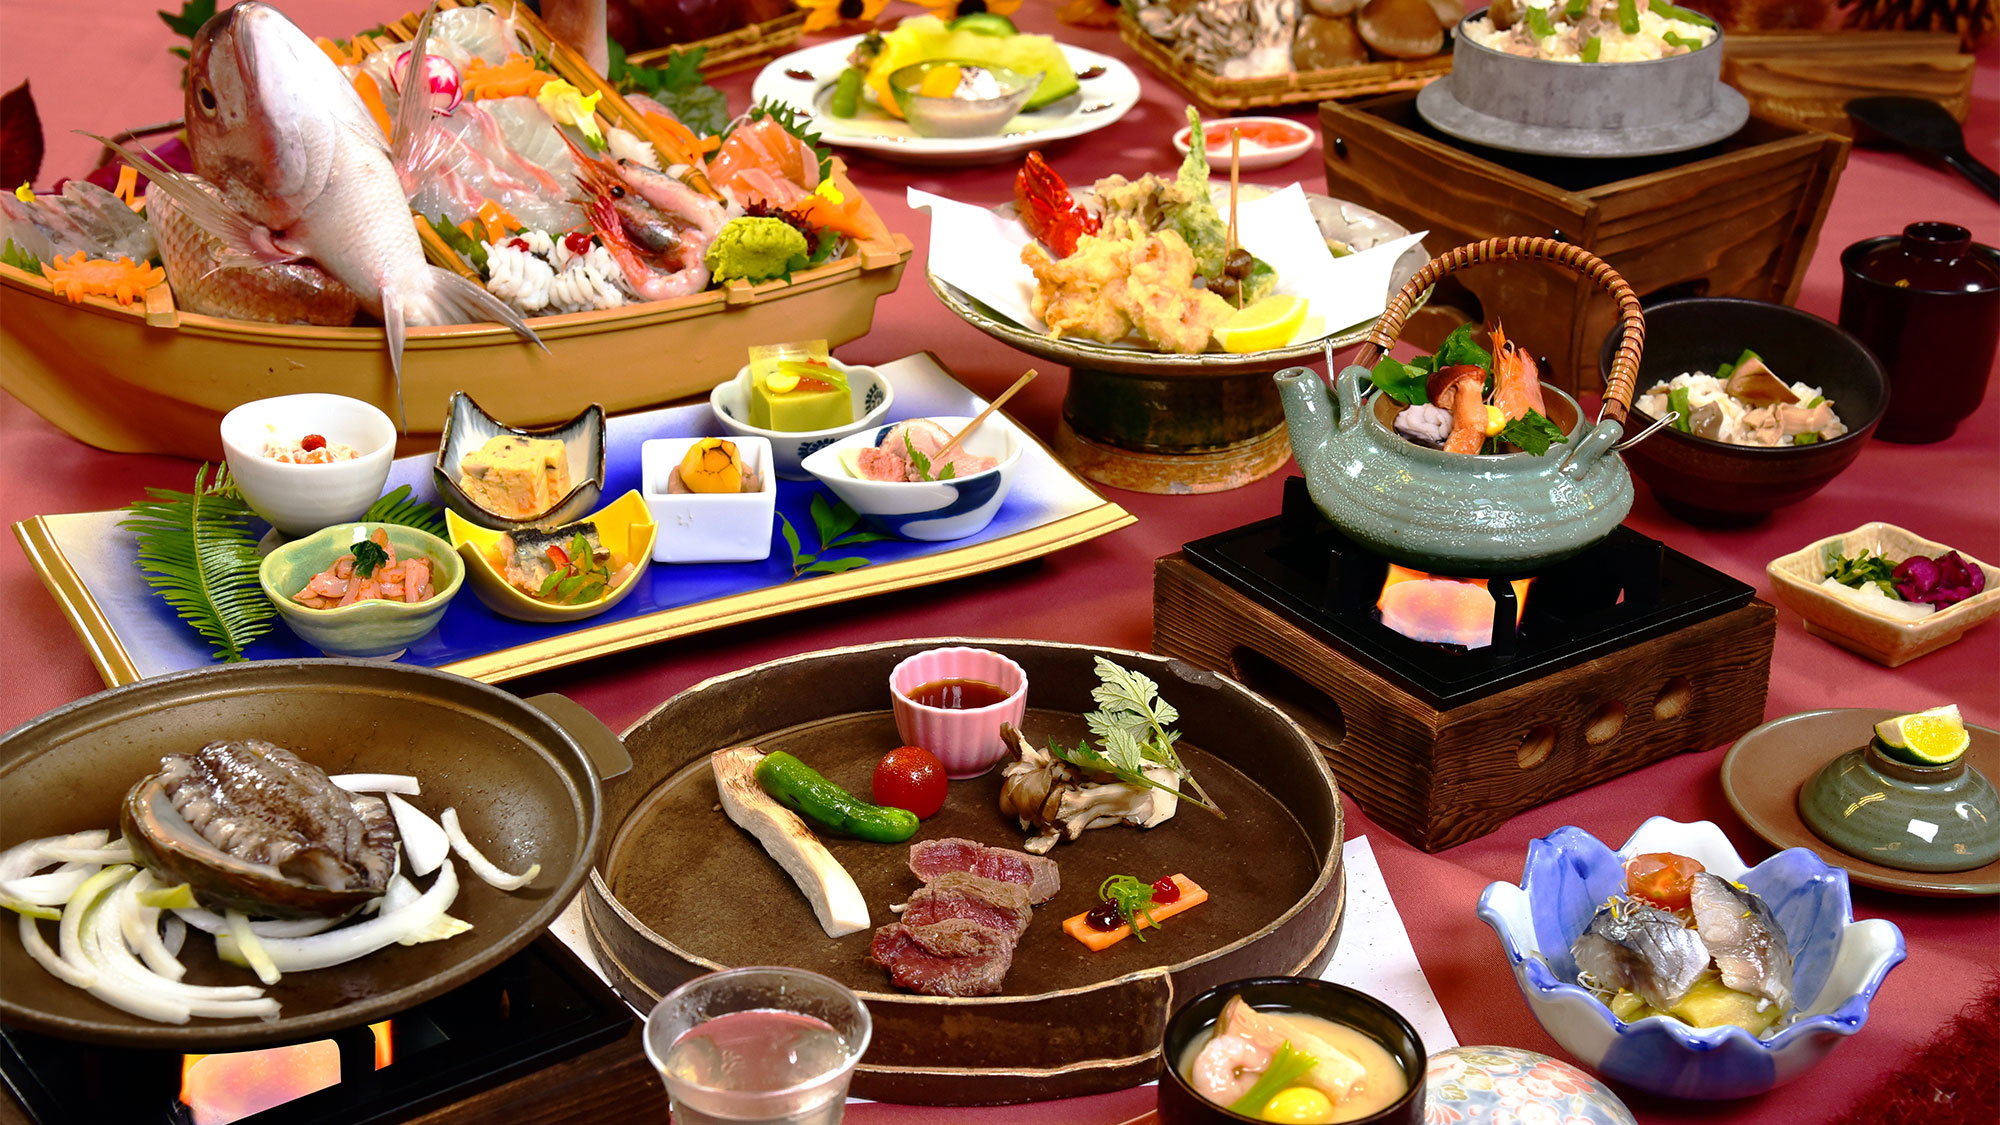 旬の食材をふんだんに、贅沢に使用した会席料理をお楽しみいただける万葉岬最高の豪華おもてなし会席。